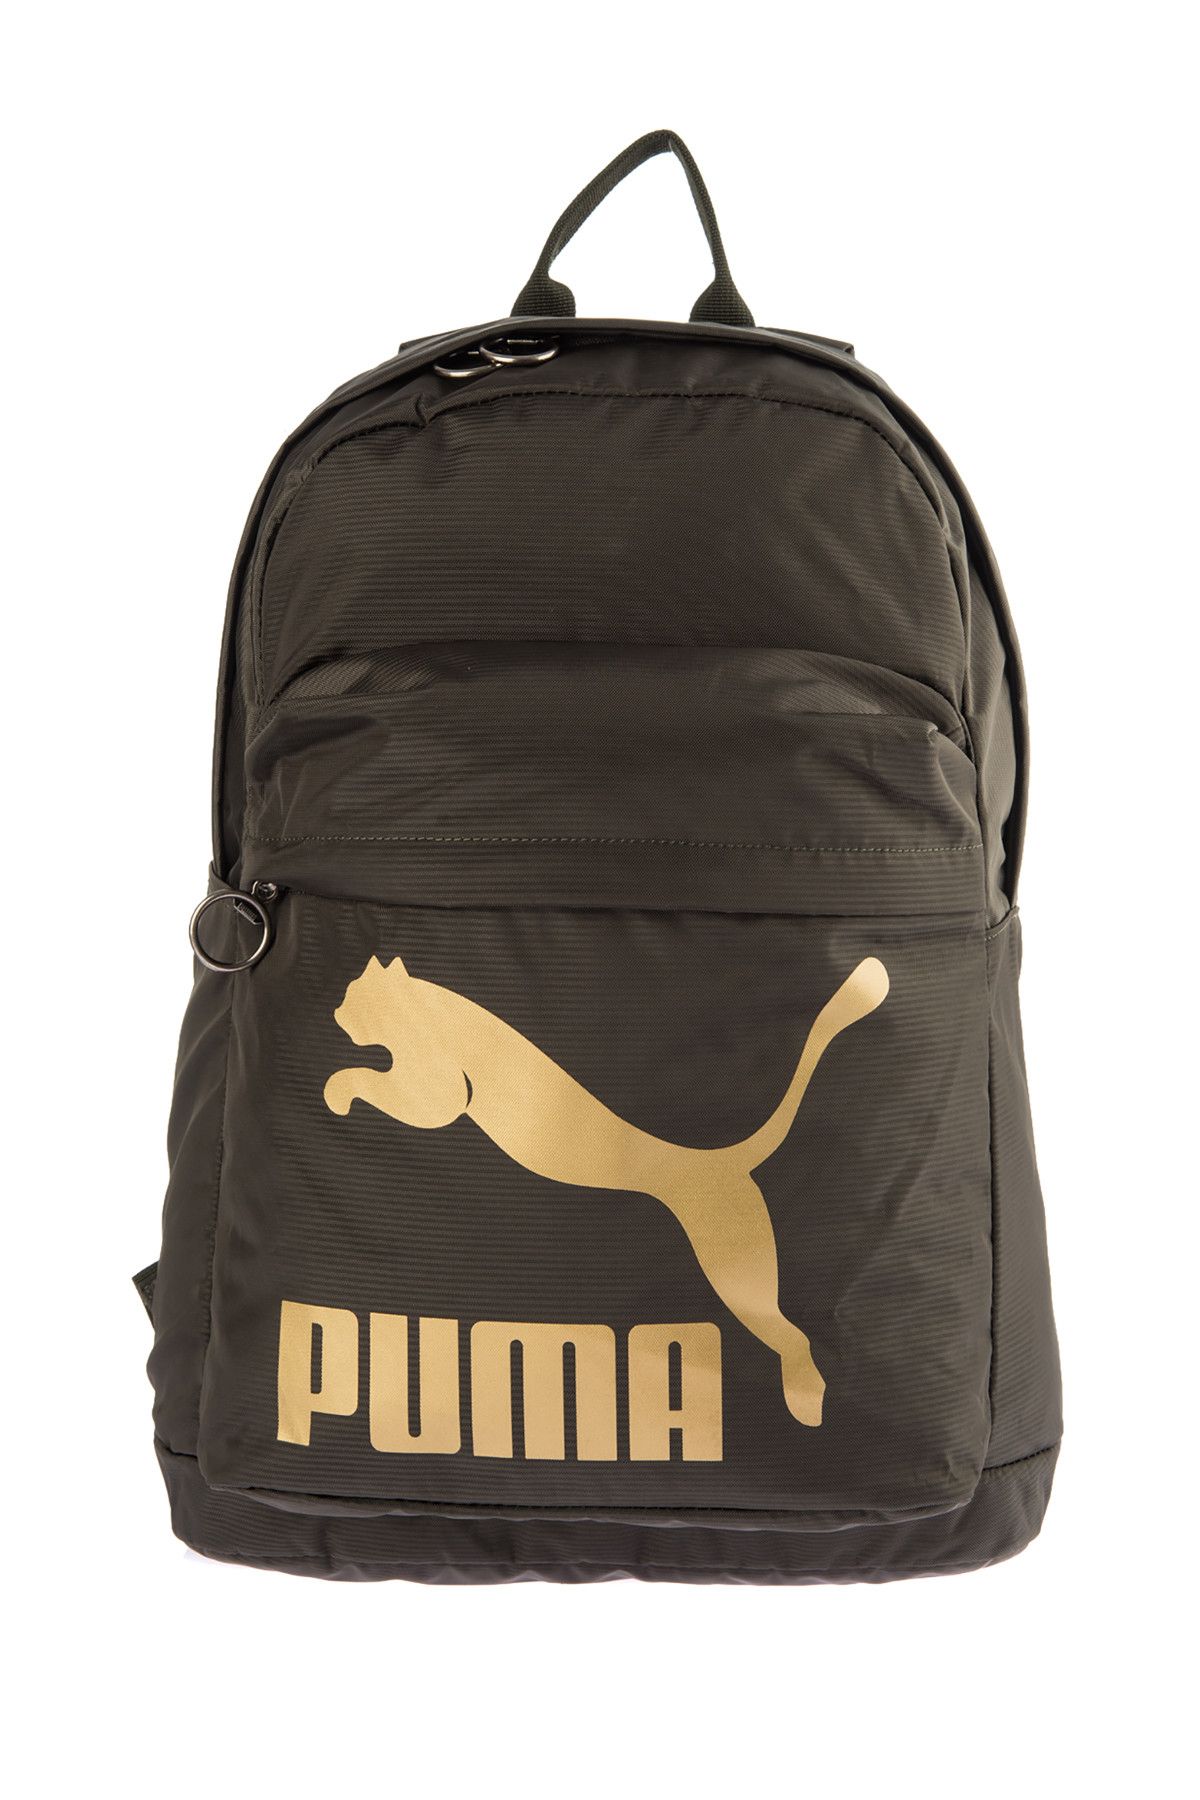 Puma Unisex Sırt Çantası - Originals Backpack - 07479910